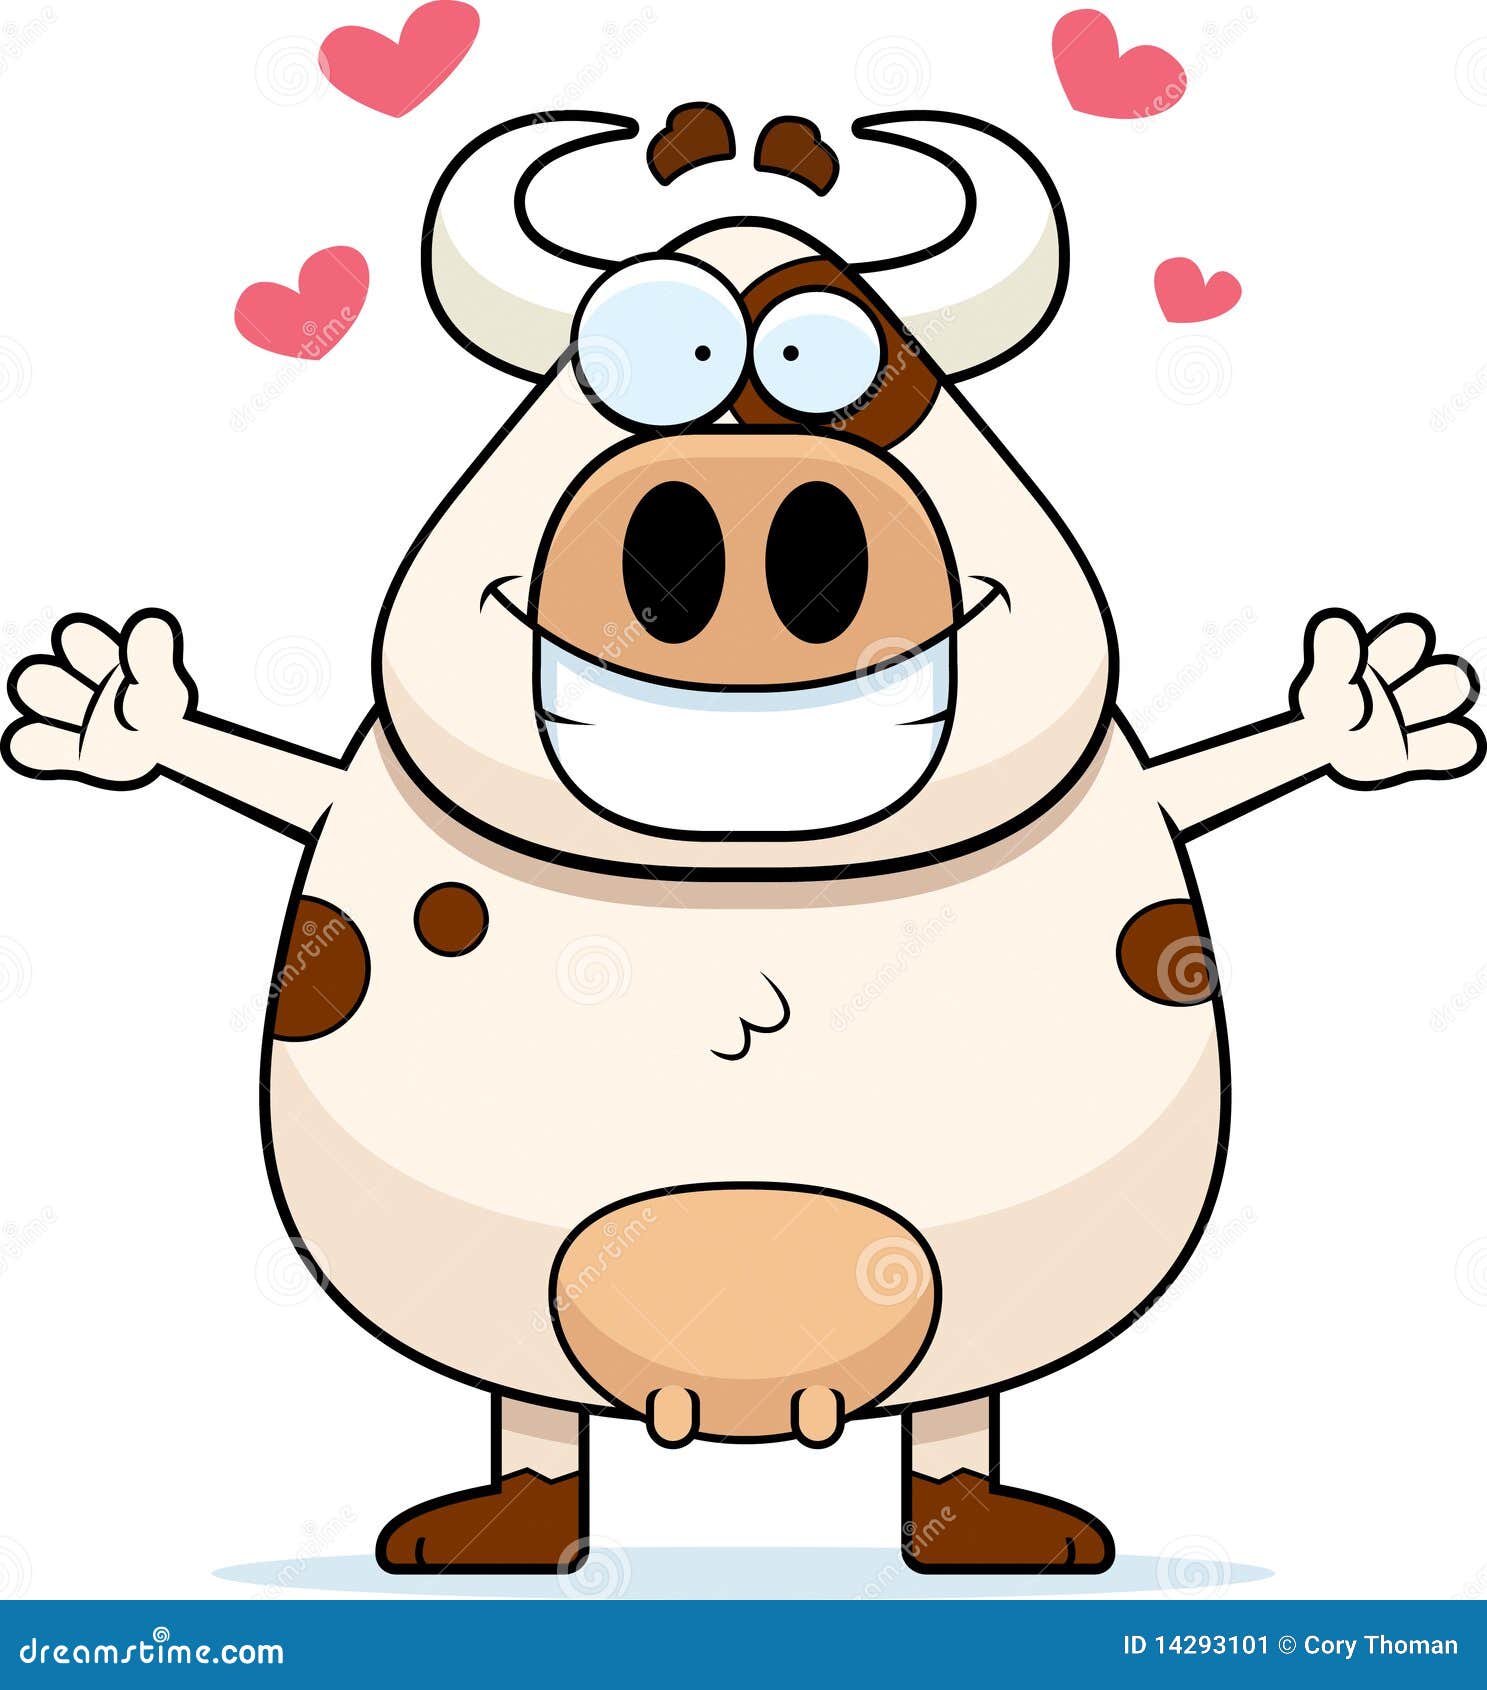 cow-hug-14293101.jpg